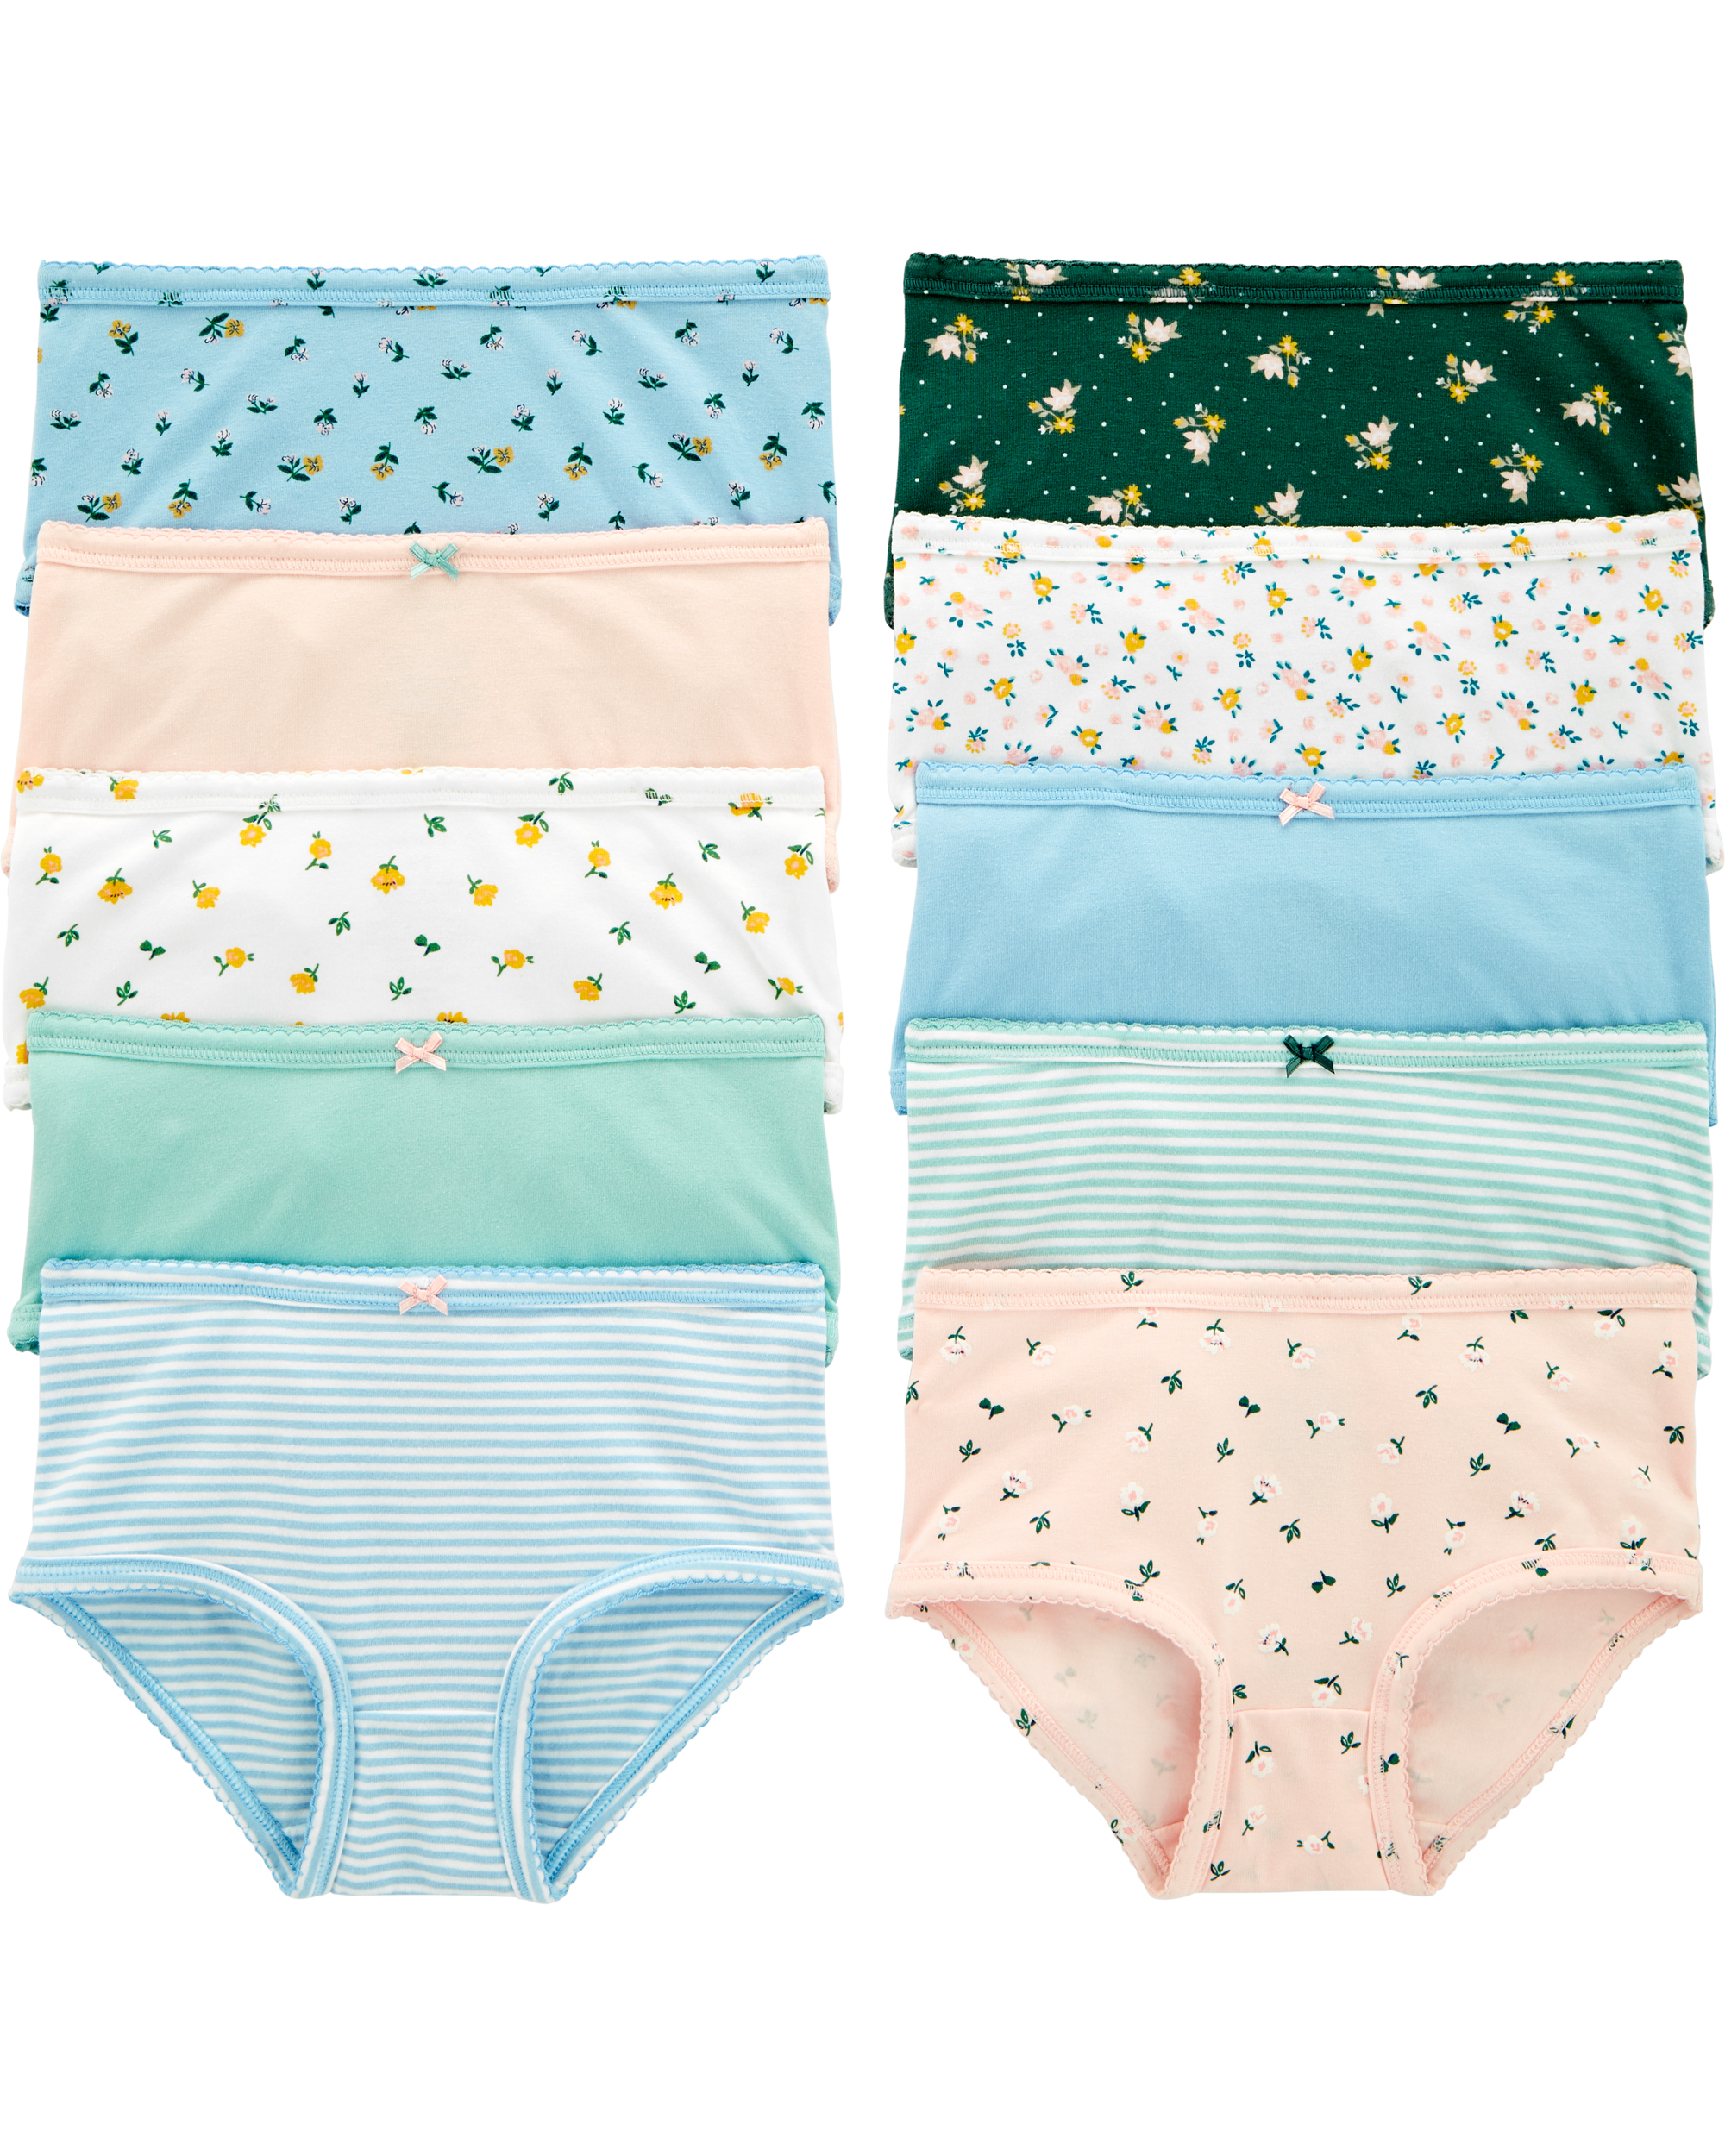 Kids Children Girls Underwear Cute Print Briefs Shorts Pants Cotton  Underwear Trunks 3PCS (Yellow, 18-24 Months)